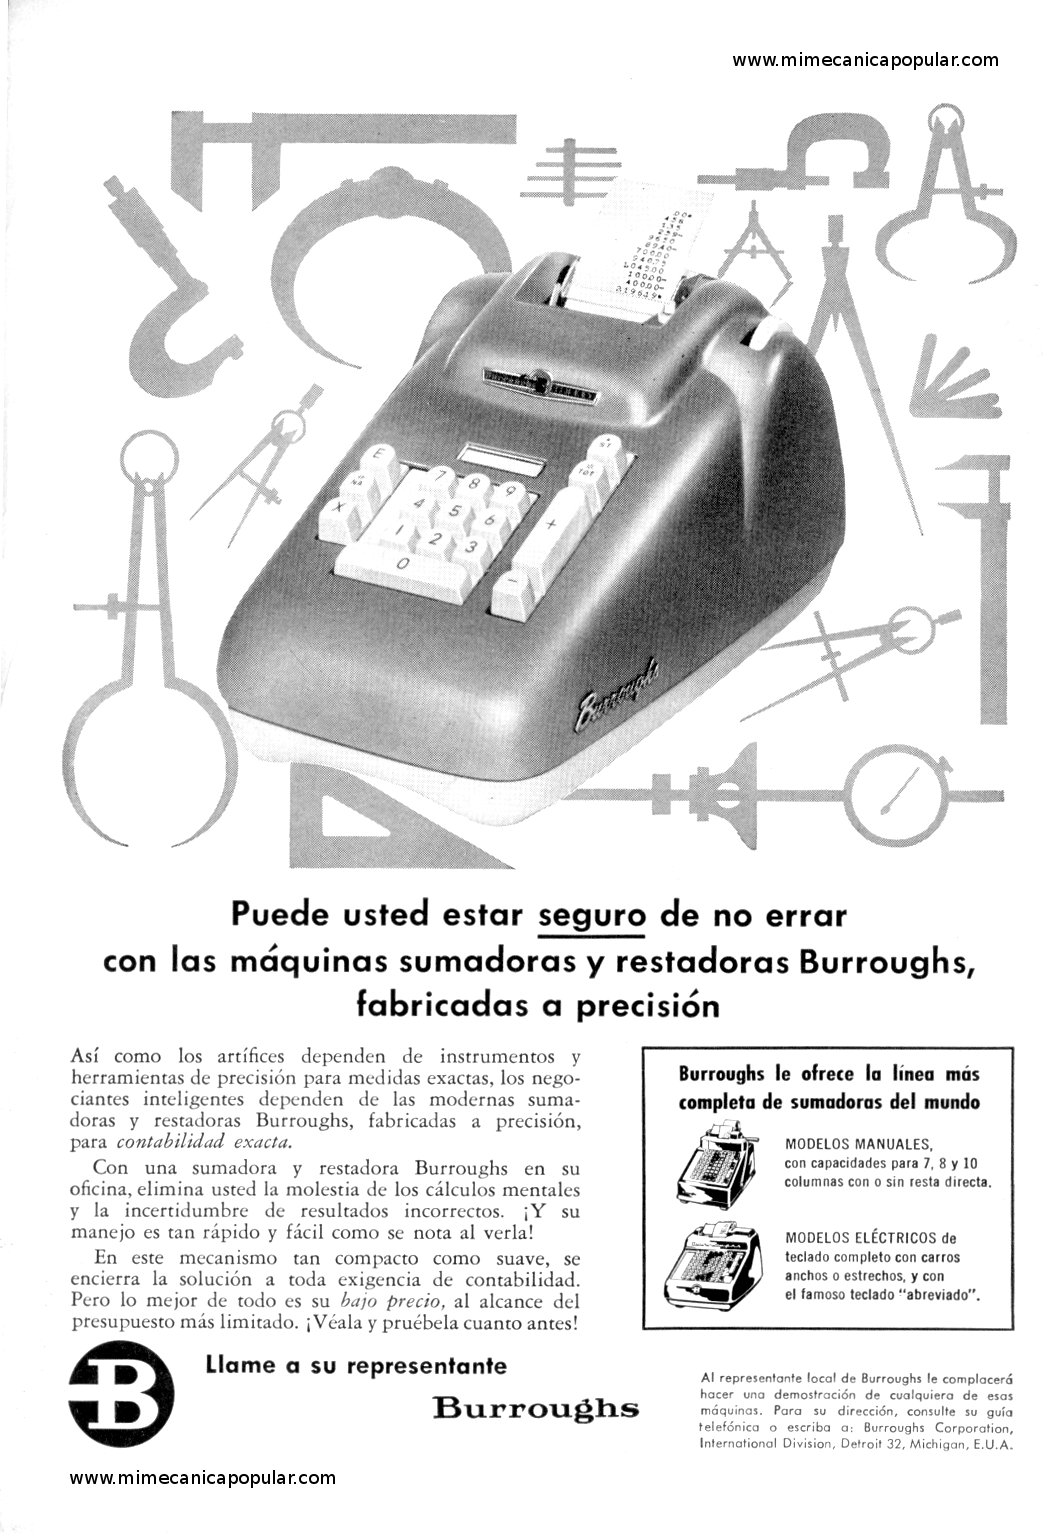 Publicidad - Máquinas sumadoras Burroughs - Abril 1960